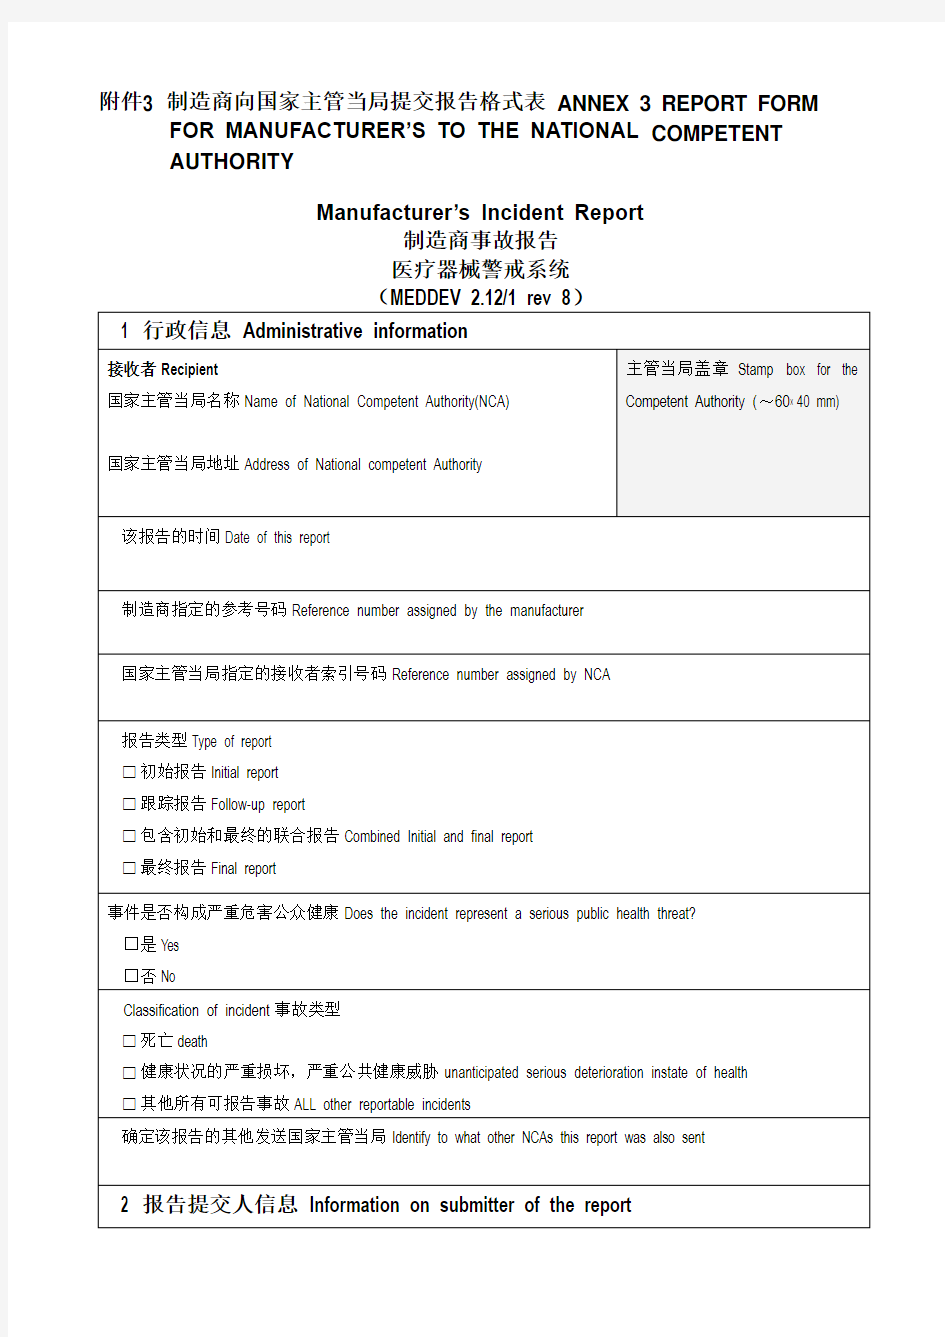 医疗器械警戒系统指南(MEDDEV第8版) 附录3和4_中英文